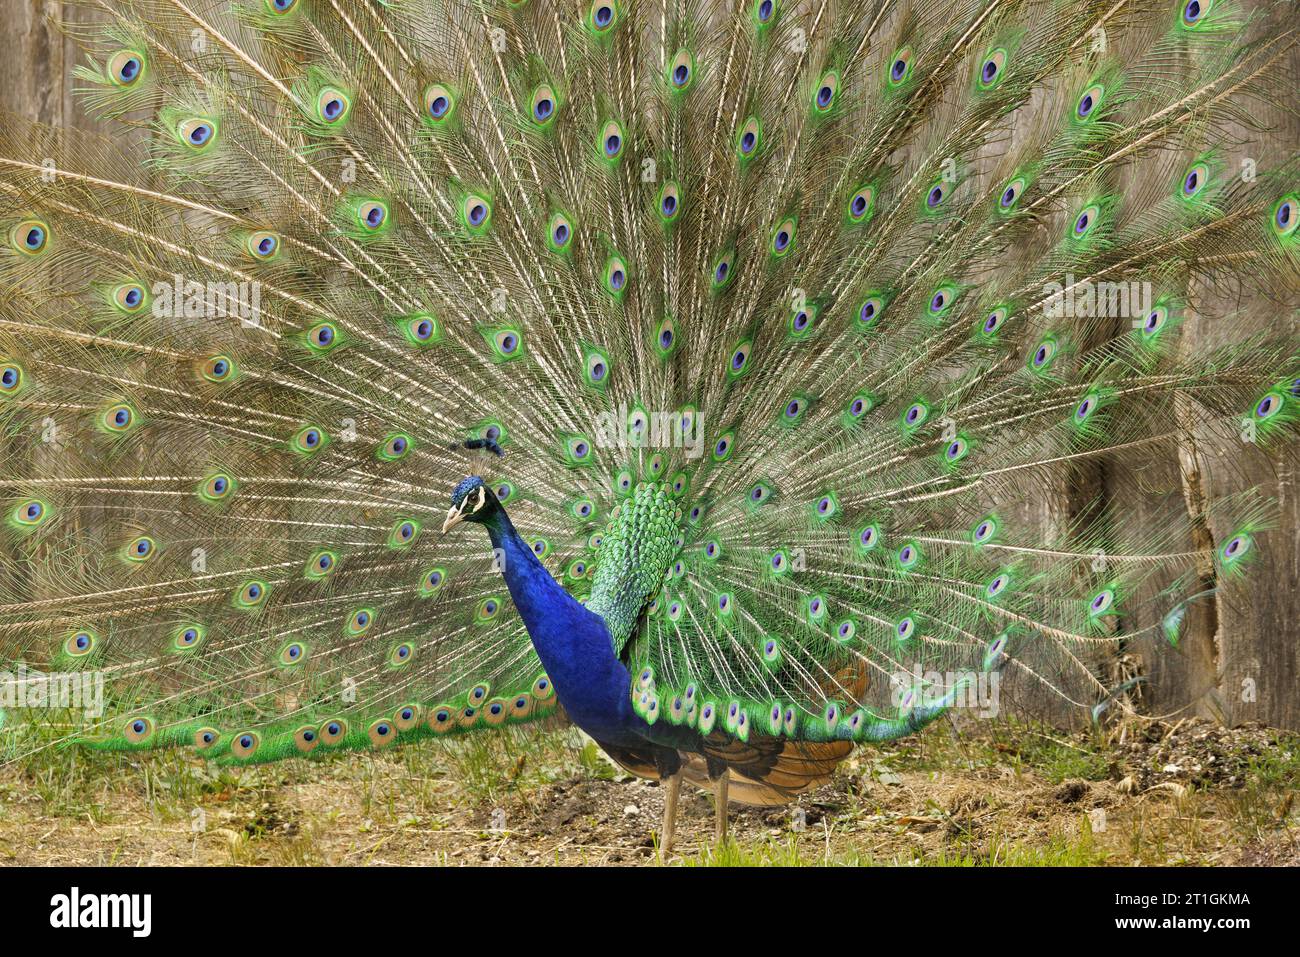 Paons commun, Indienne, paons paons bleus (Pavo cristatus), la diffusion de tail feathers peacock Banque D'Images